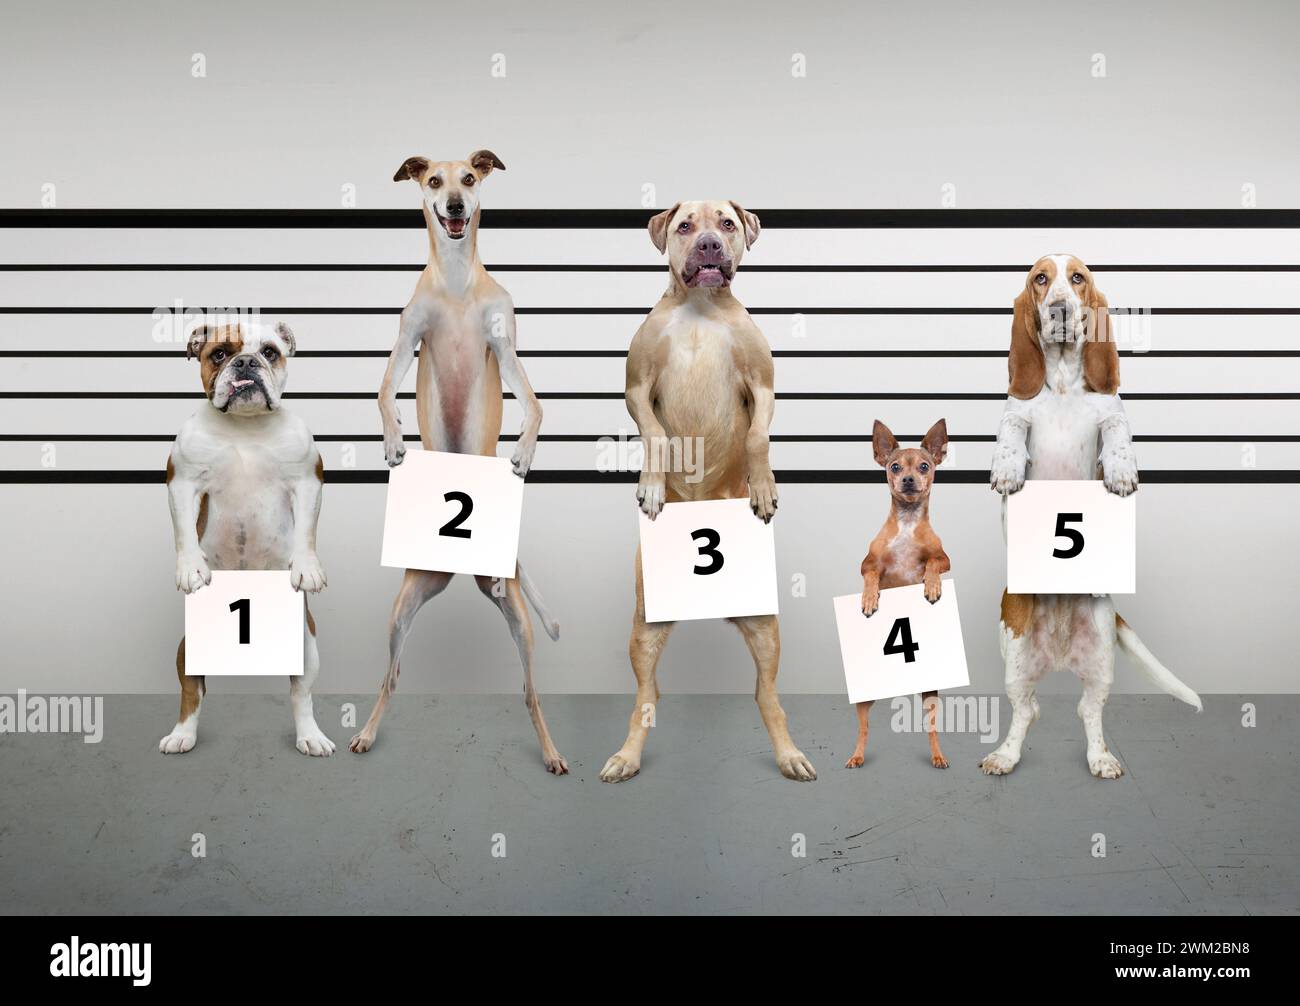 Cinq races de chiens différentes peuplent une image humoristique de la police dans une photo sur les races de chiens, le comportement et les questions connexes, Banque D'Images